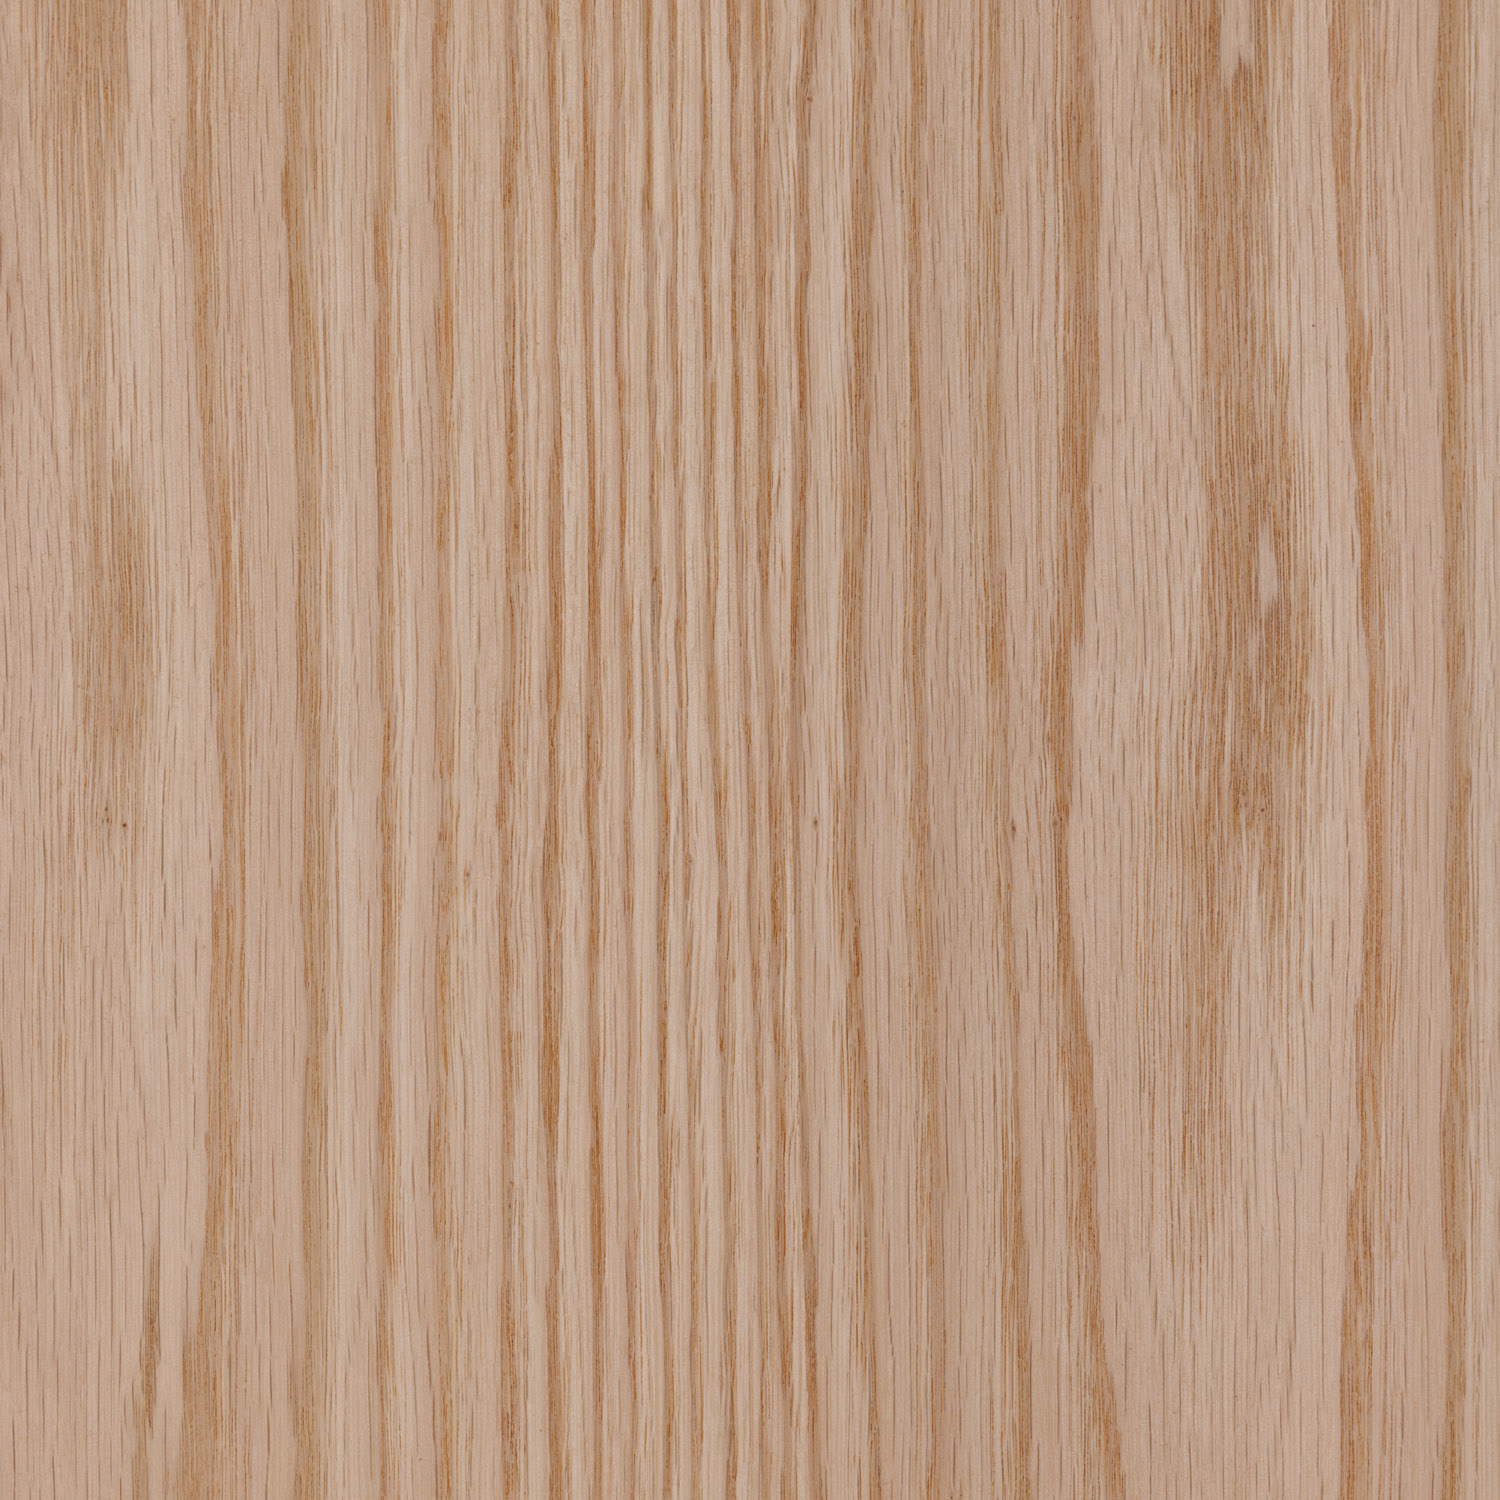 red oak natural wood veneer panel